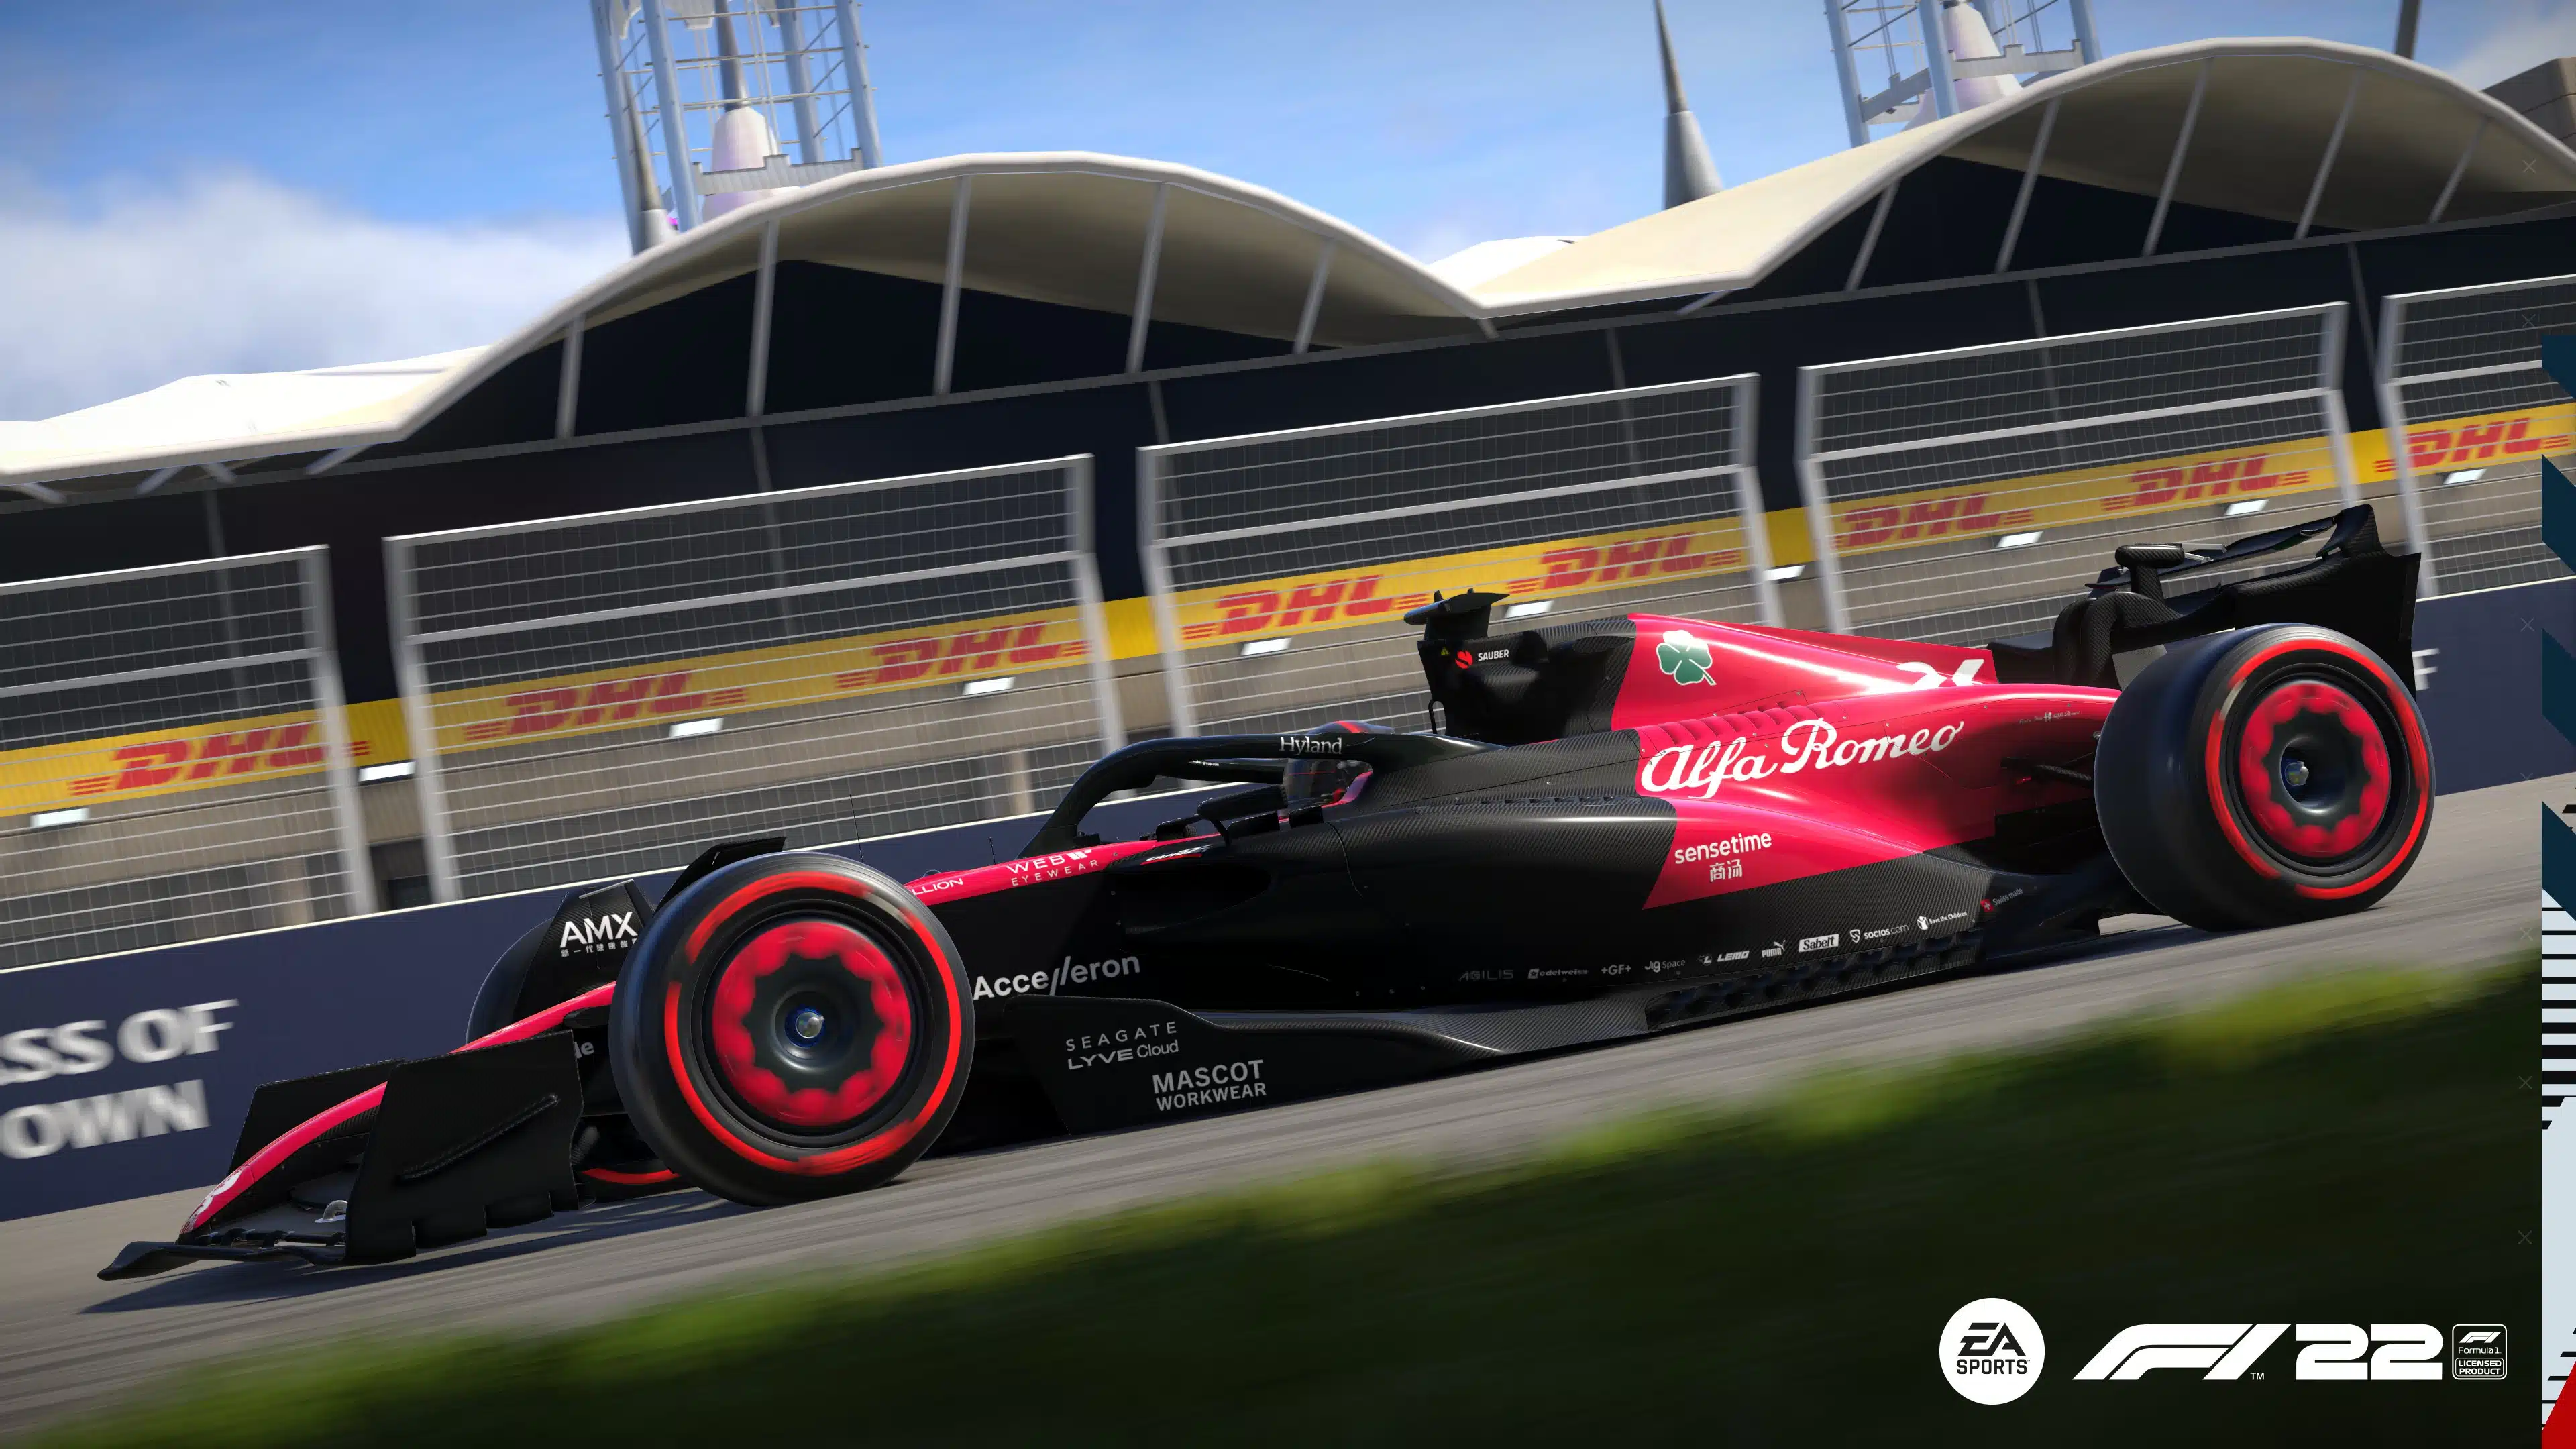 F1 22 update 1.18